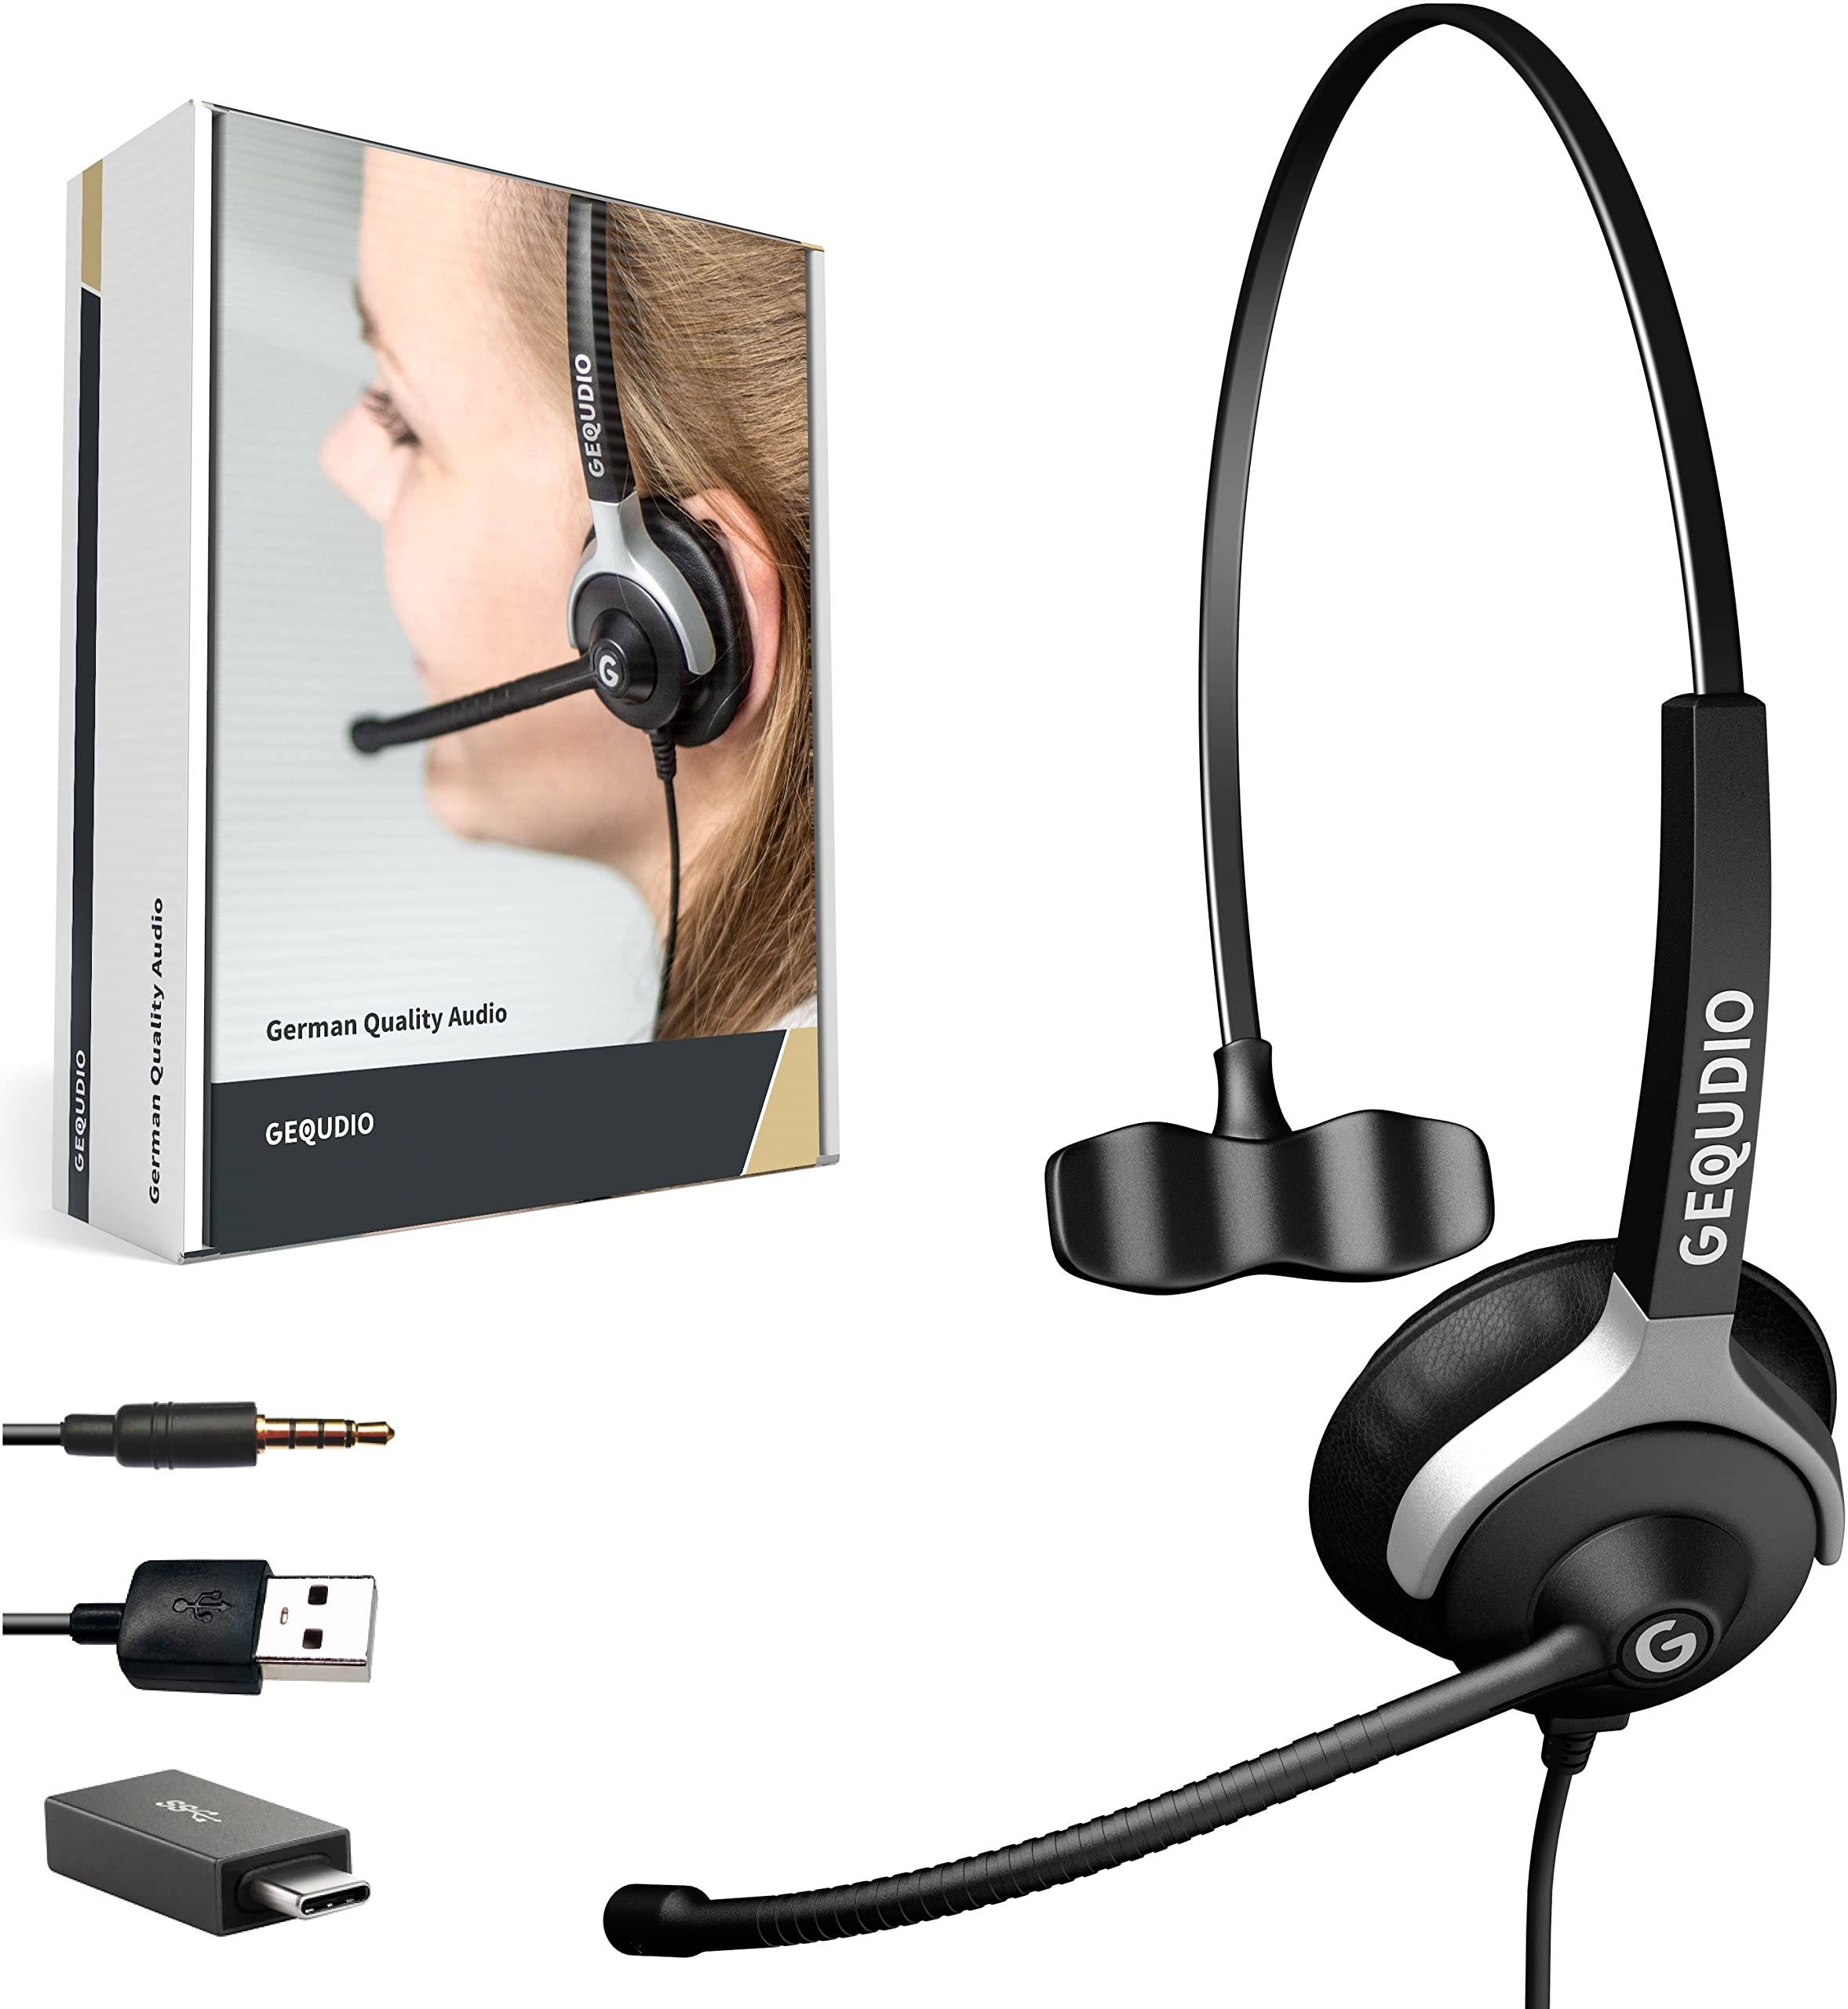 GEQUDIO [3in1] Business Headset mit USB-A, USB-C und 3,5mm Klinke kompatibel mit PC, Mac und Smartphone - Kopfhörer & Mikrofon Ersatz Polster - besonders leicht 60g (1-Ohr)